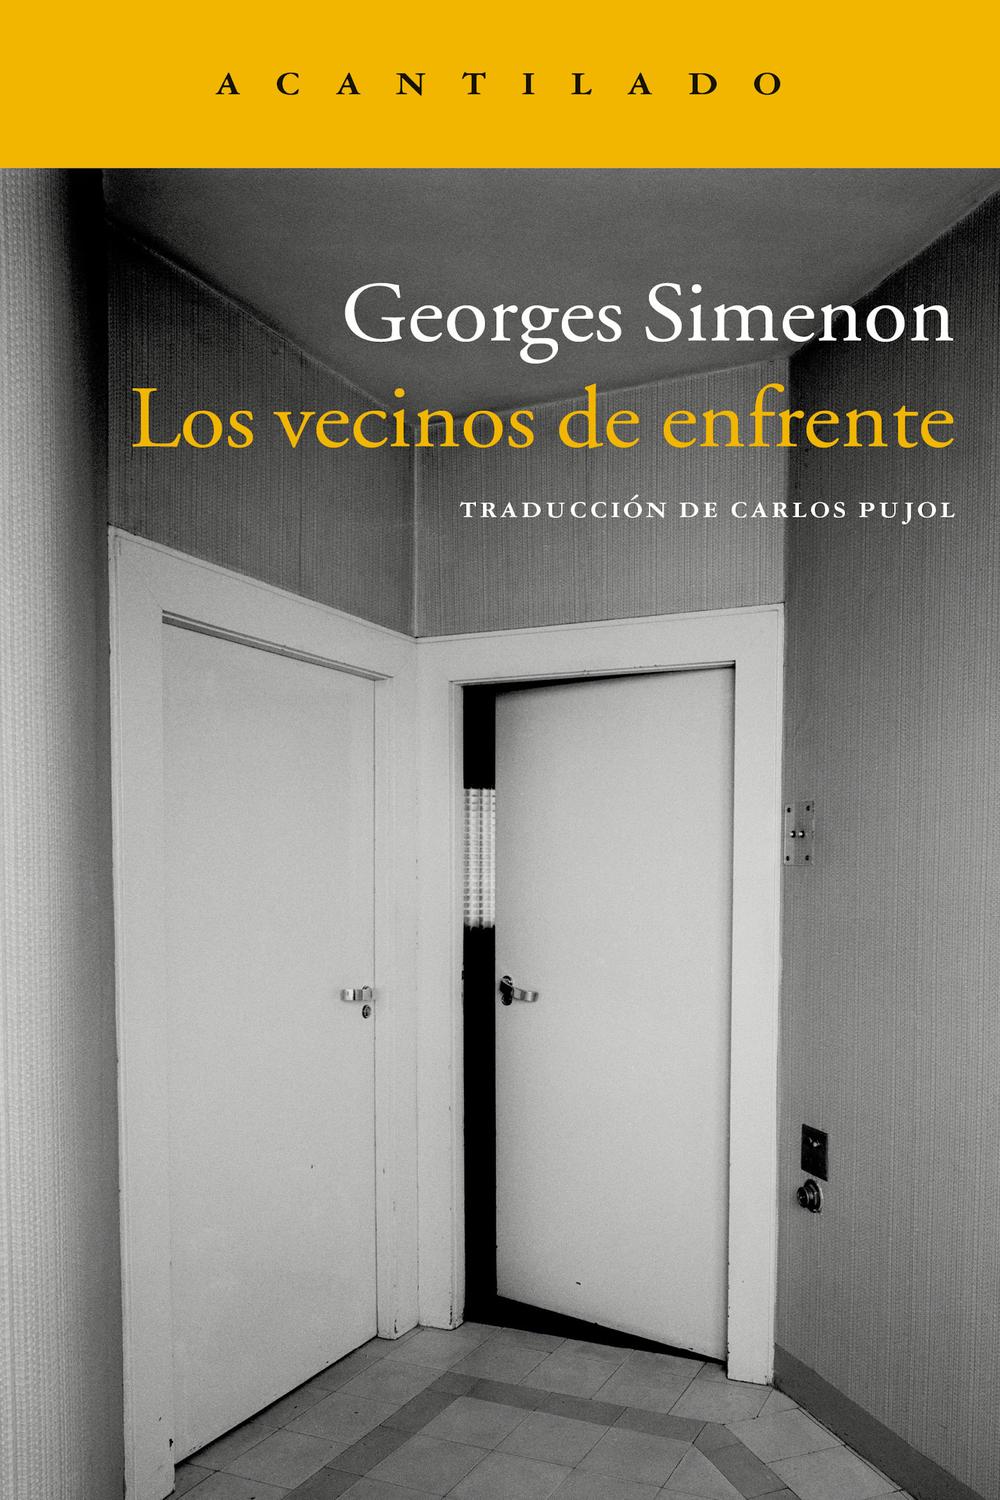 Los vecinos de enfrente - Georges Simenon, Carlos Pujol Jaumandreu